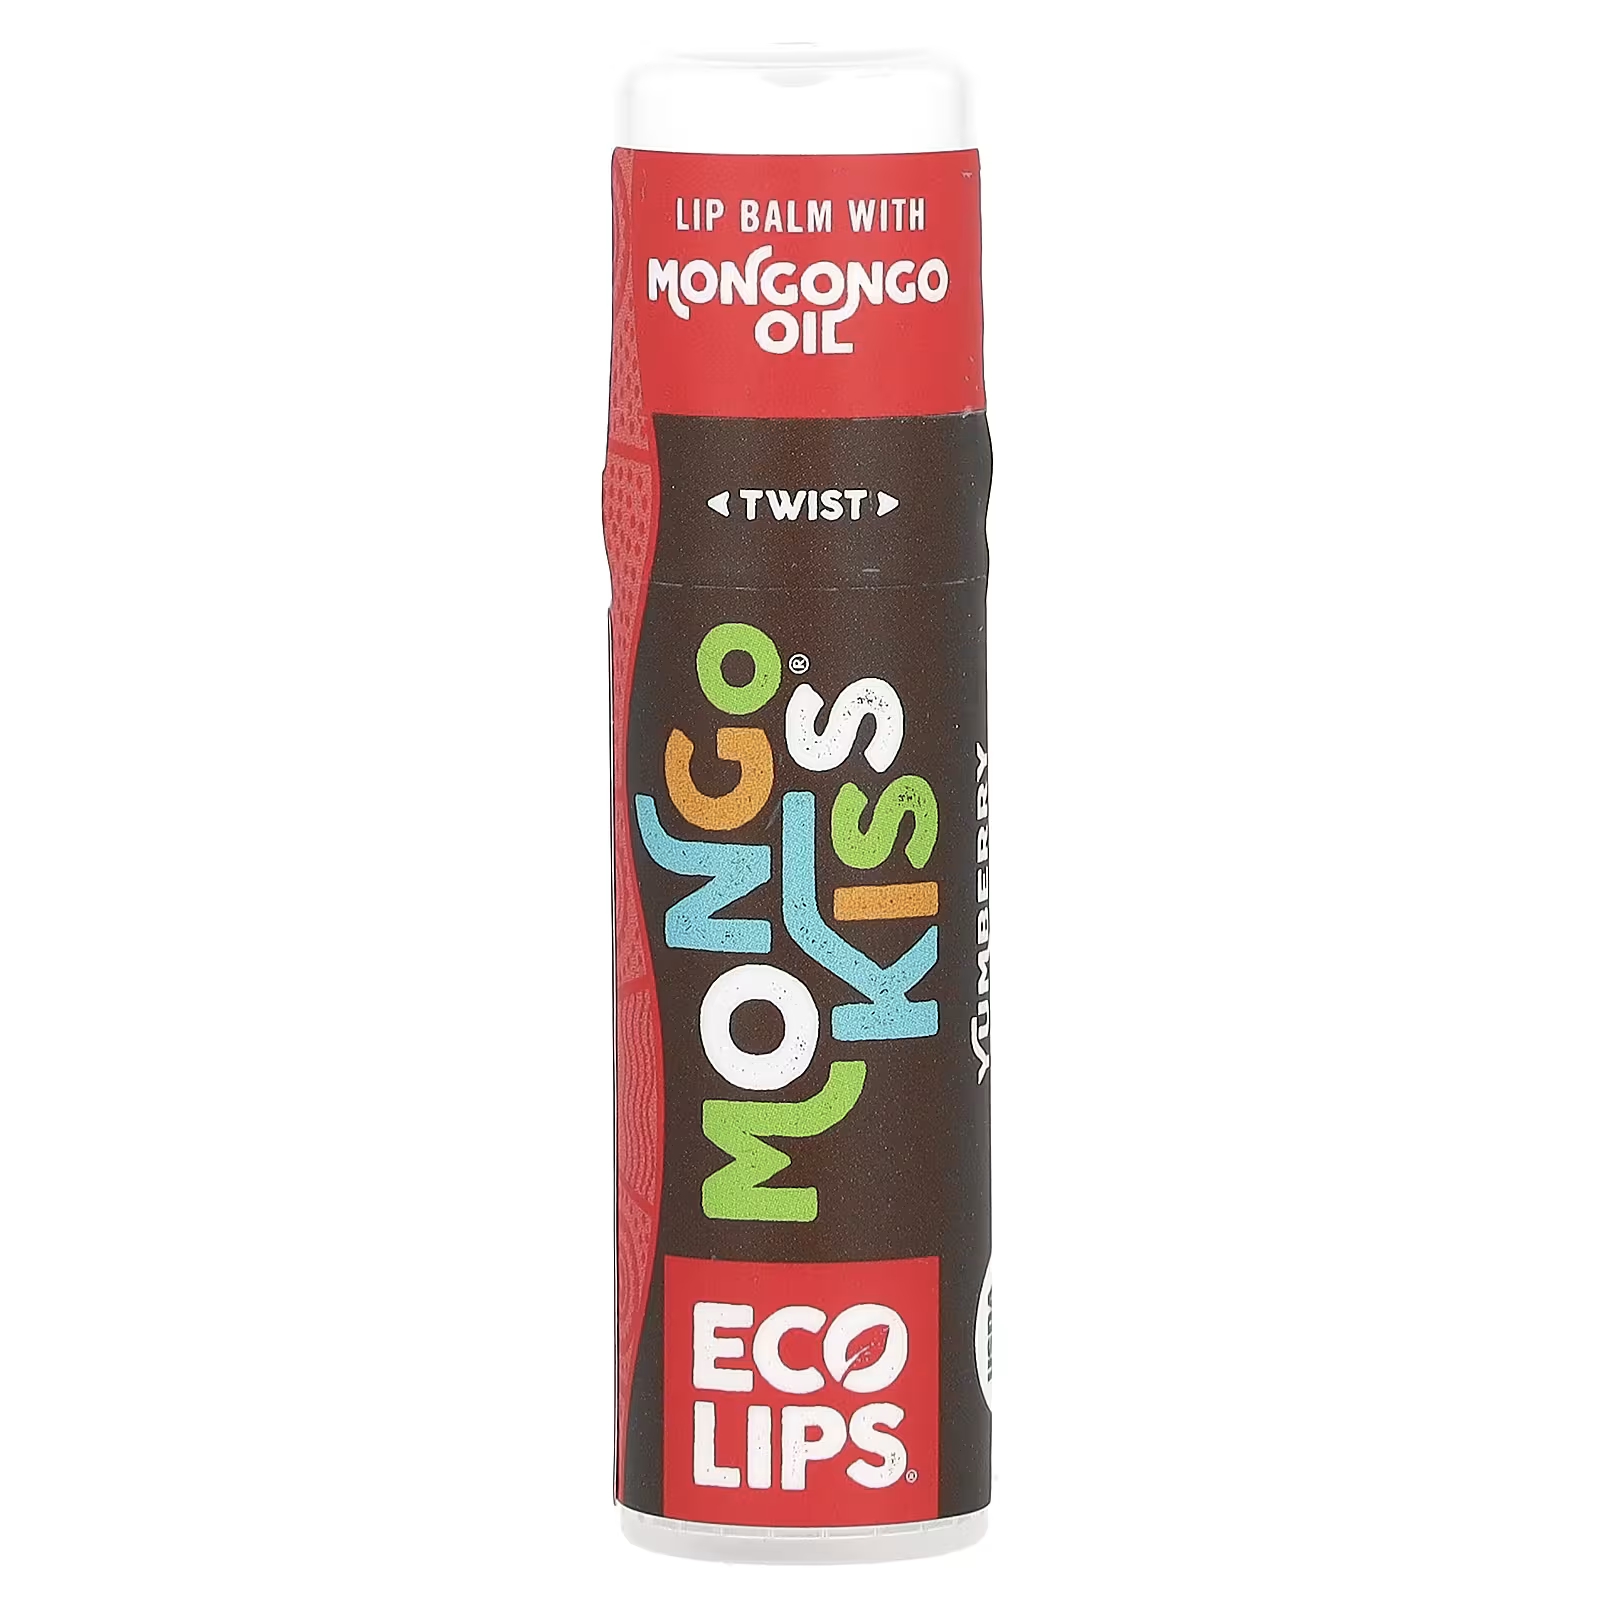 Бальзам для губ Eco Lips Inc. Mongo Kiss Yumberry palmer s бальзам для губ формула масла какао spf15 ухаживающий бальзам для губ шоколад 4 г